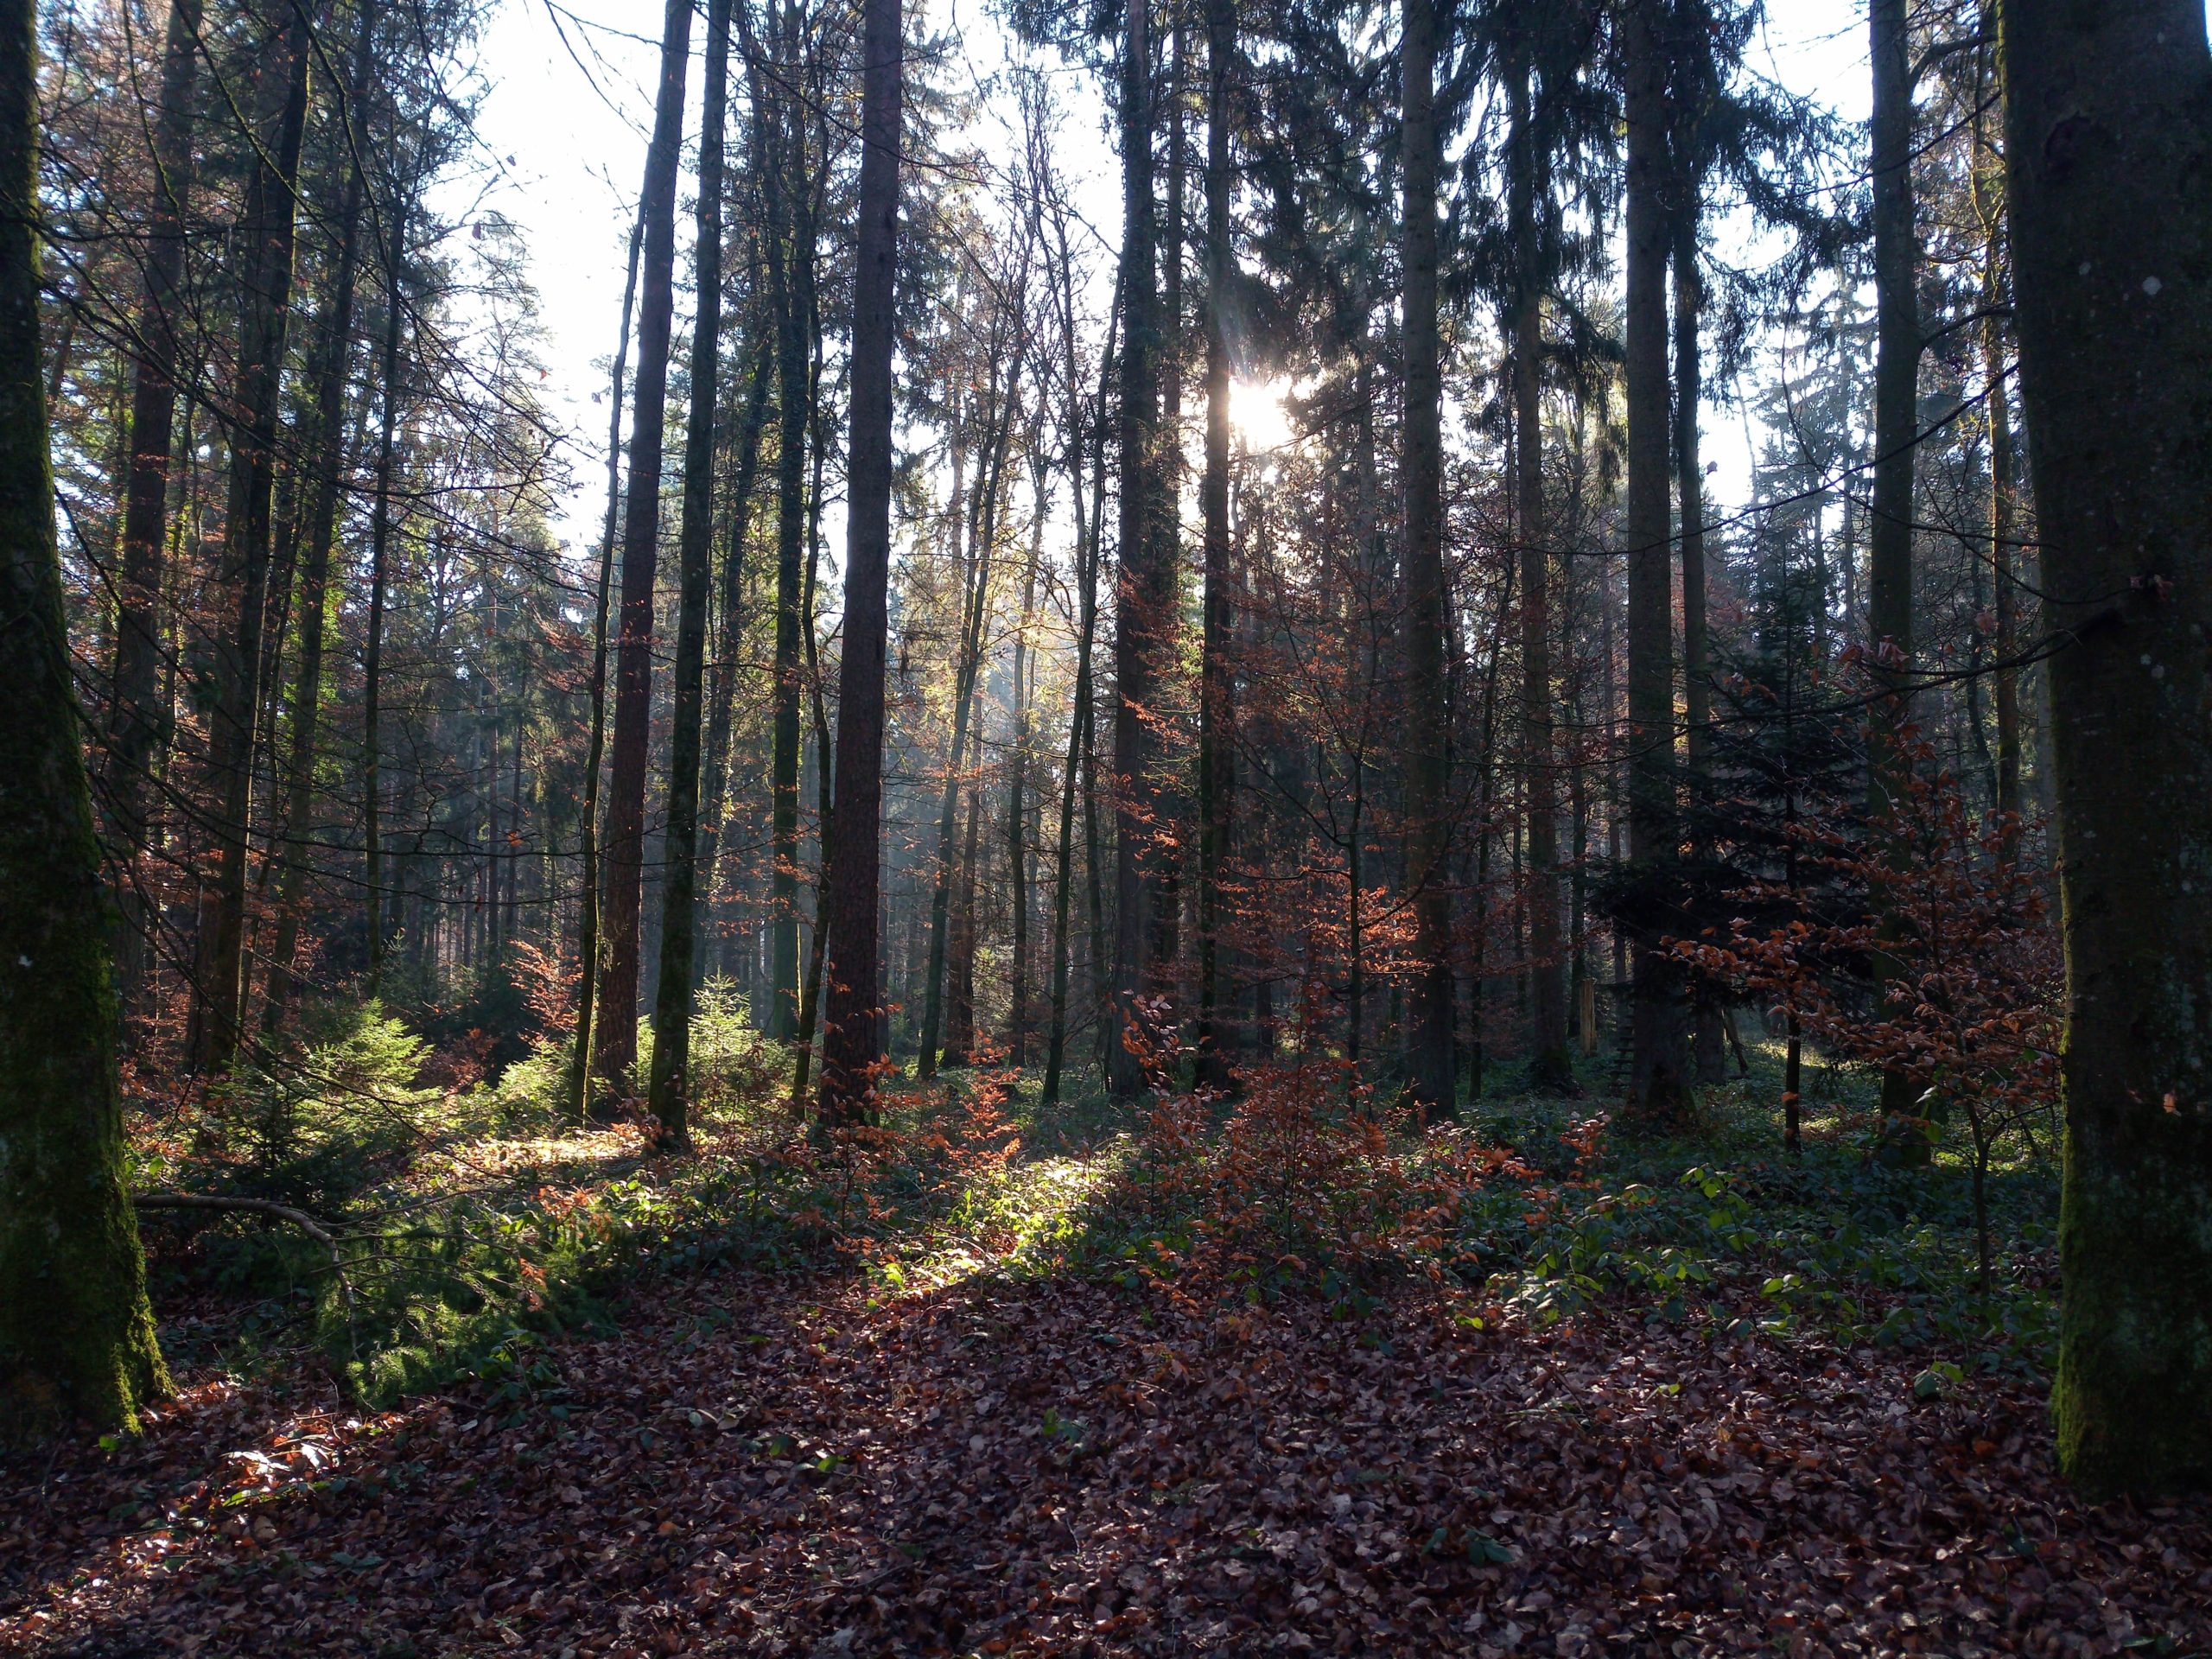 Zurück zu den Wurzeln oder warum uns der Wald so gut tut - 3 Tipps für einen erholsamen Wald-Besuch